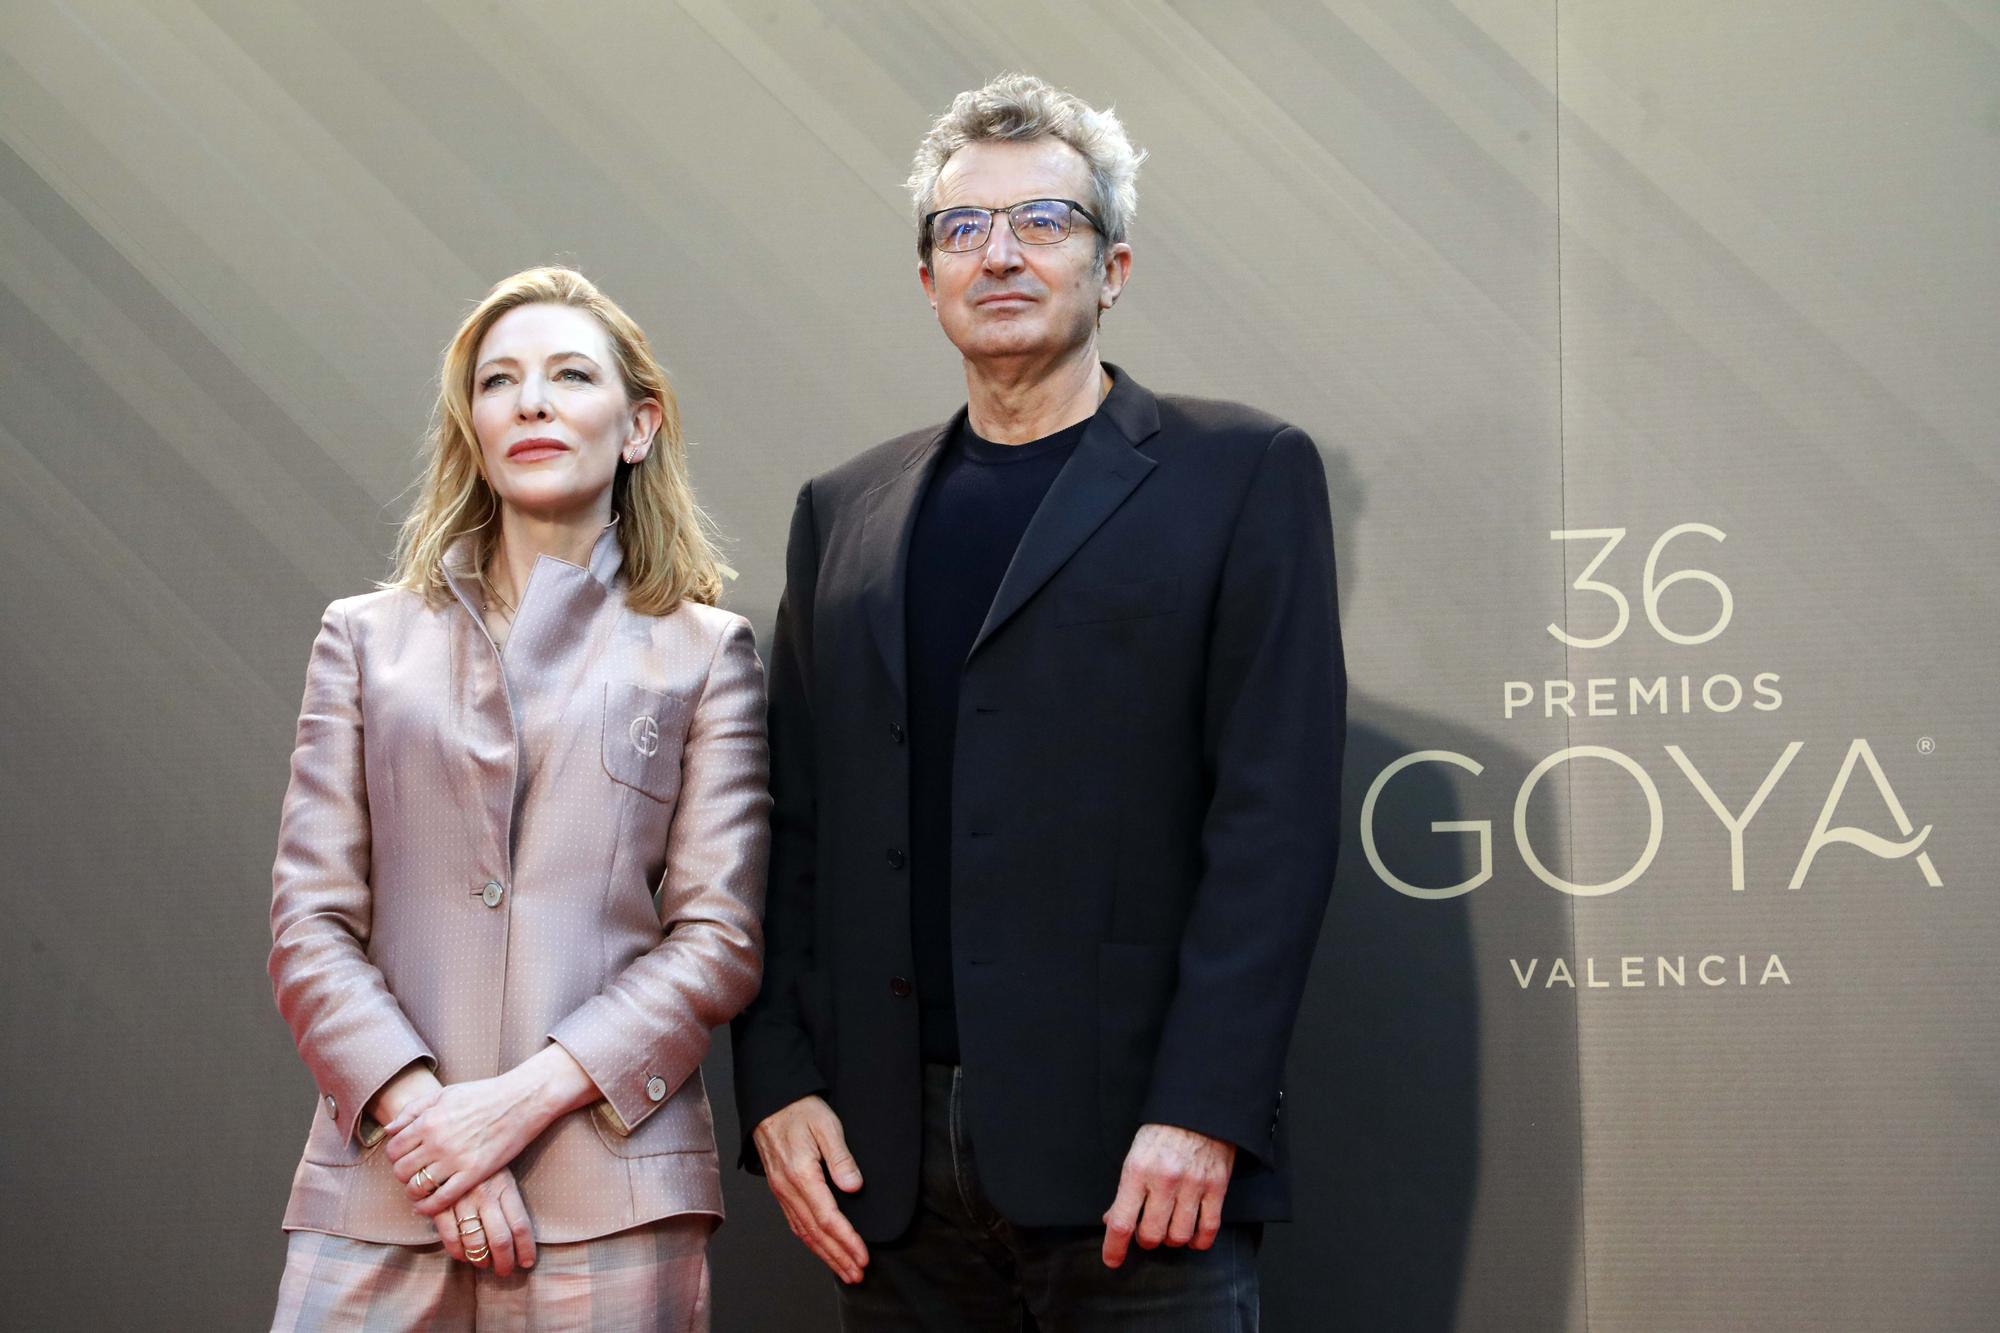 La actriz australiana Cate Blanchett, premio internacional de los Goya, en el Palau de les Arts